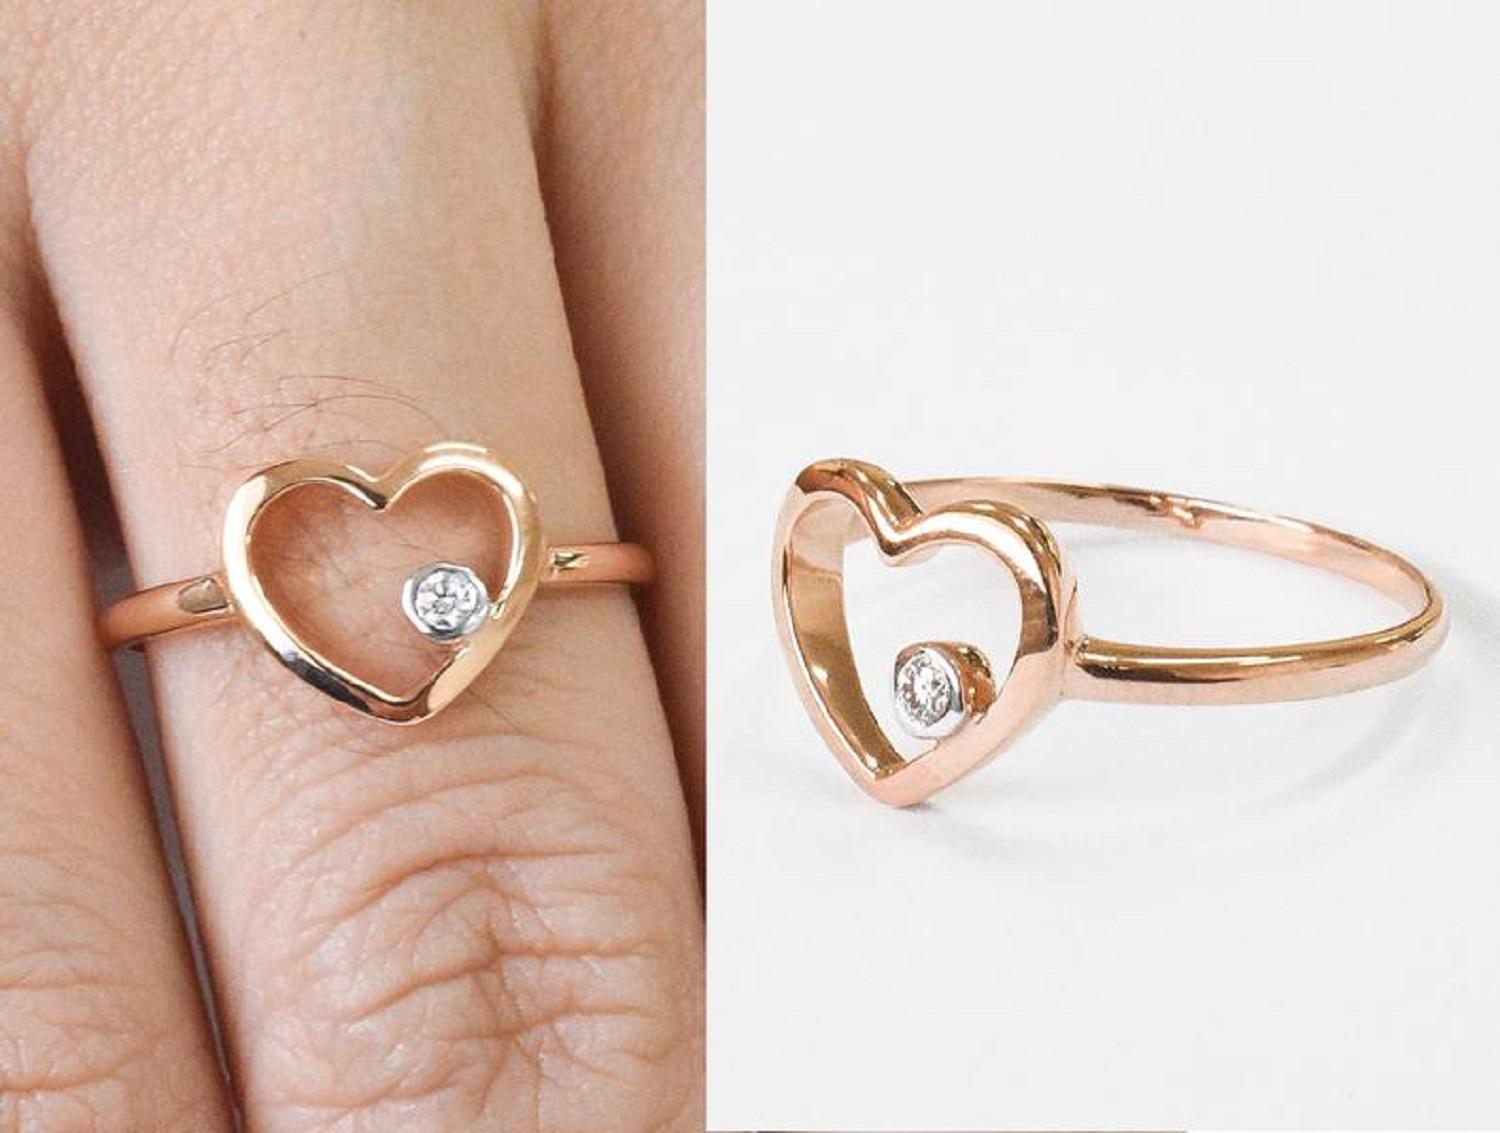 For Sale:  18k Rose Gold Diamond Heart Ring Minimal Heart Ring with Bezel Set Diamond 12